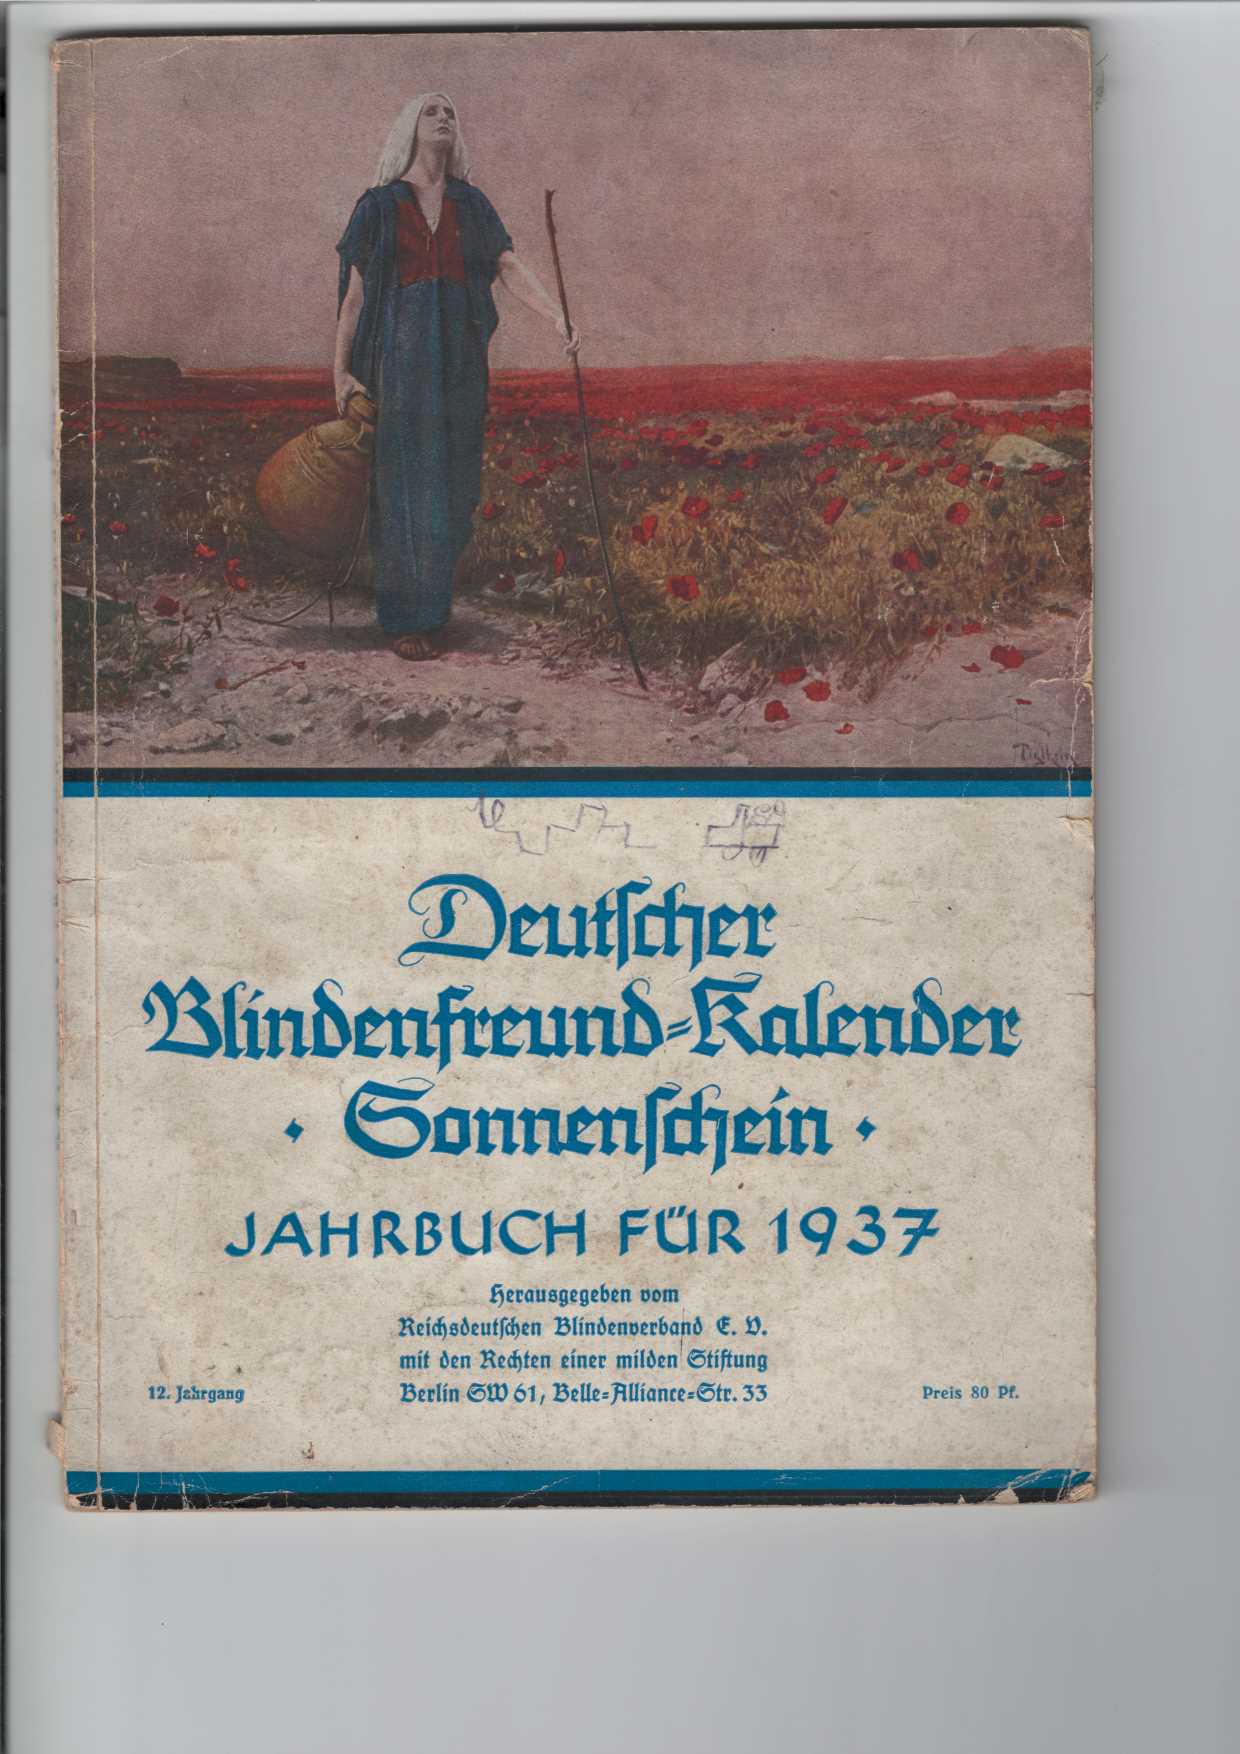 Deutscher Blindenfreund-Kalender "Sonnenschein".